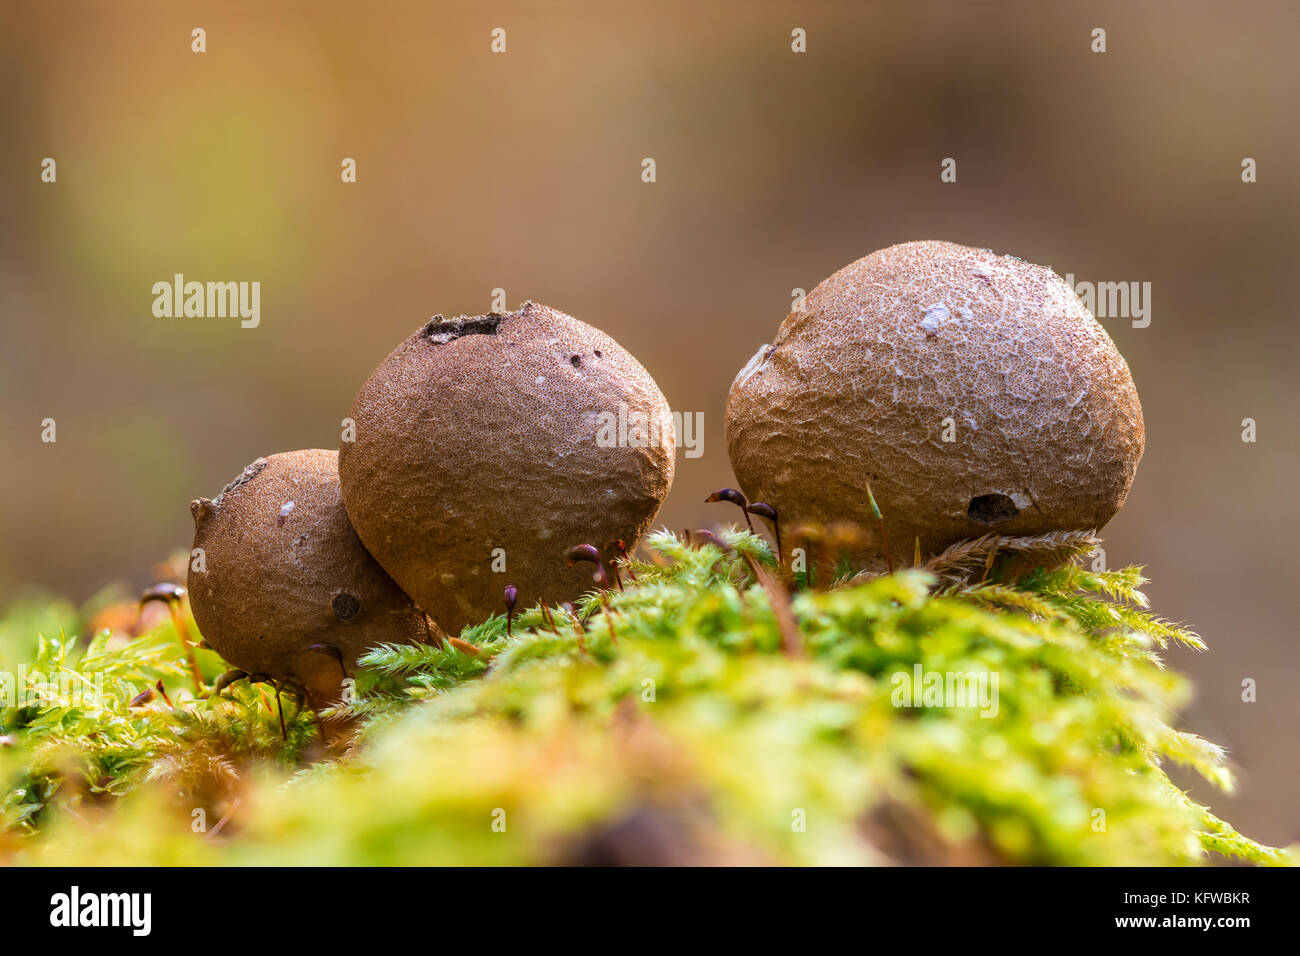 Close-up Makro Foto von pear-shaped puffball (lycoperdon Pyriforme) Pilze auf einem Bemoosten Baumstumpf in den Wald. Stockfoto